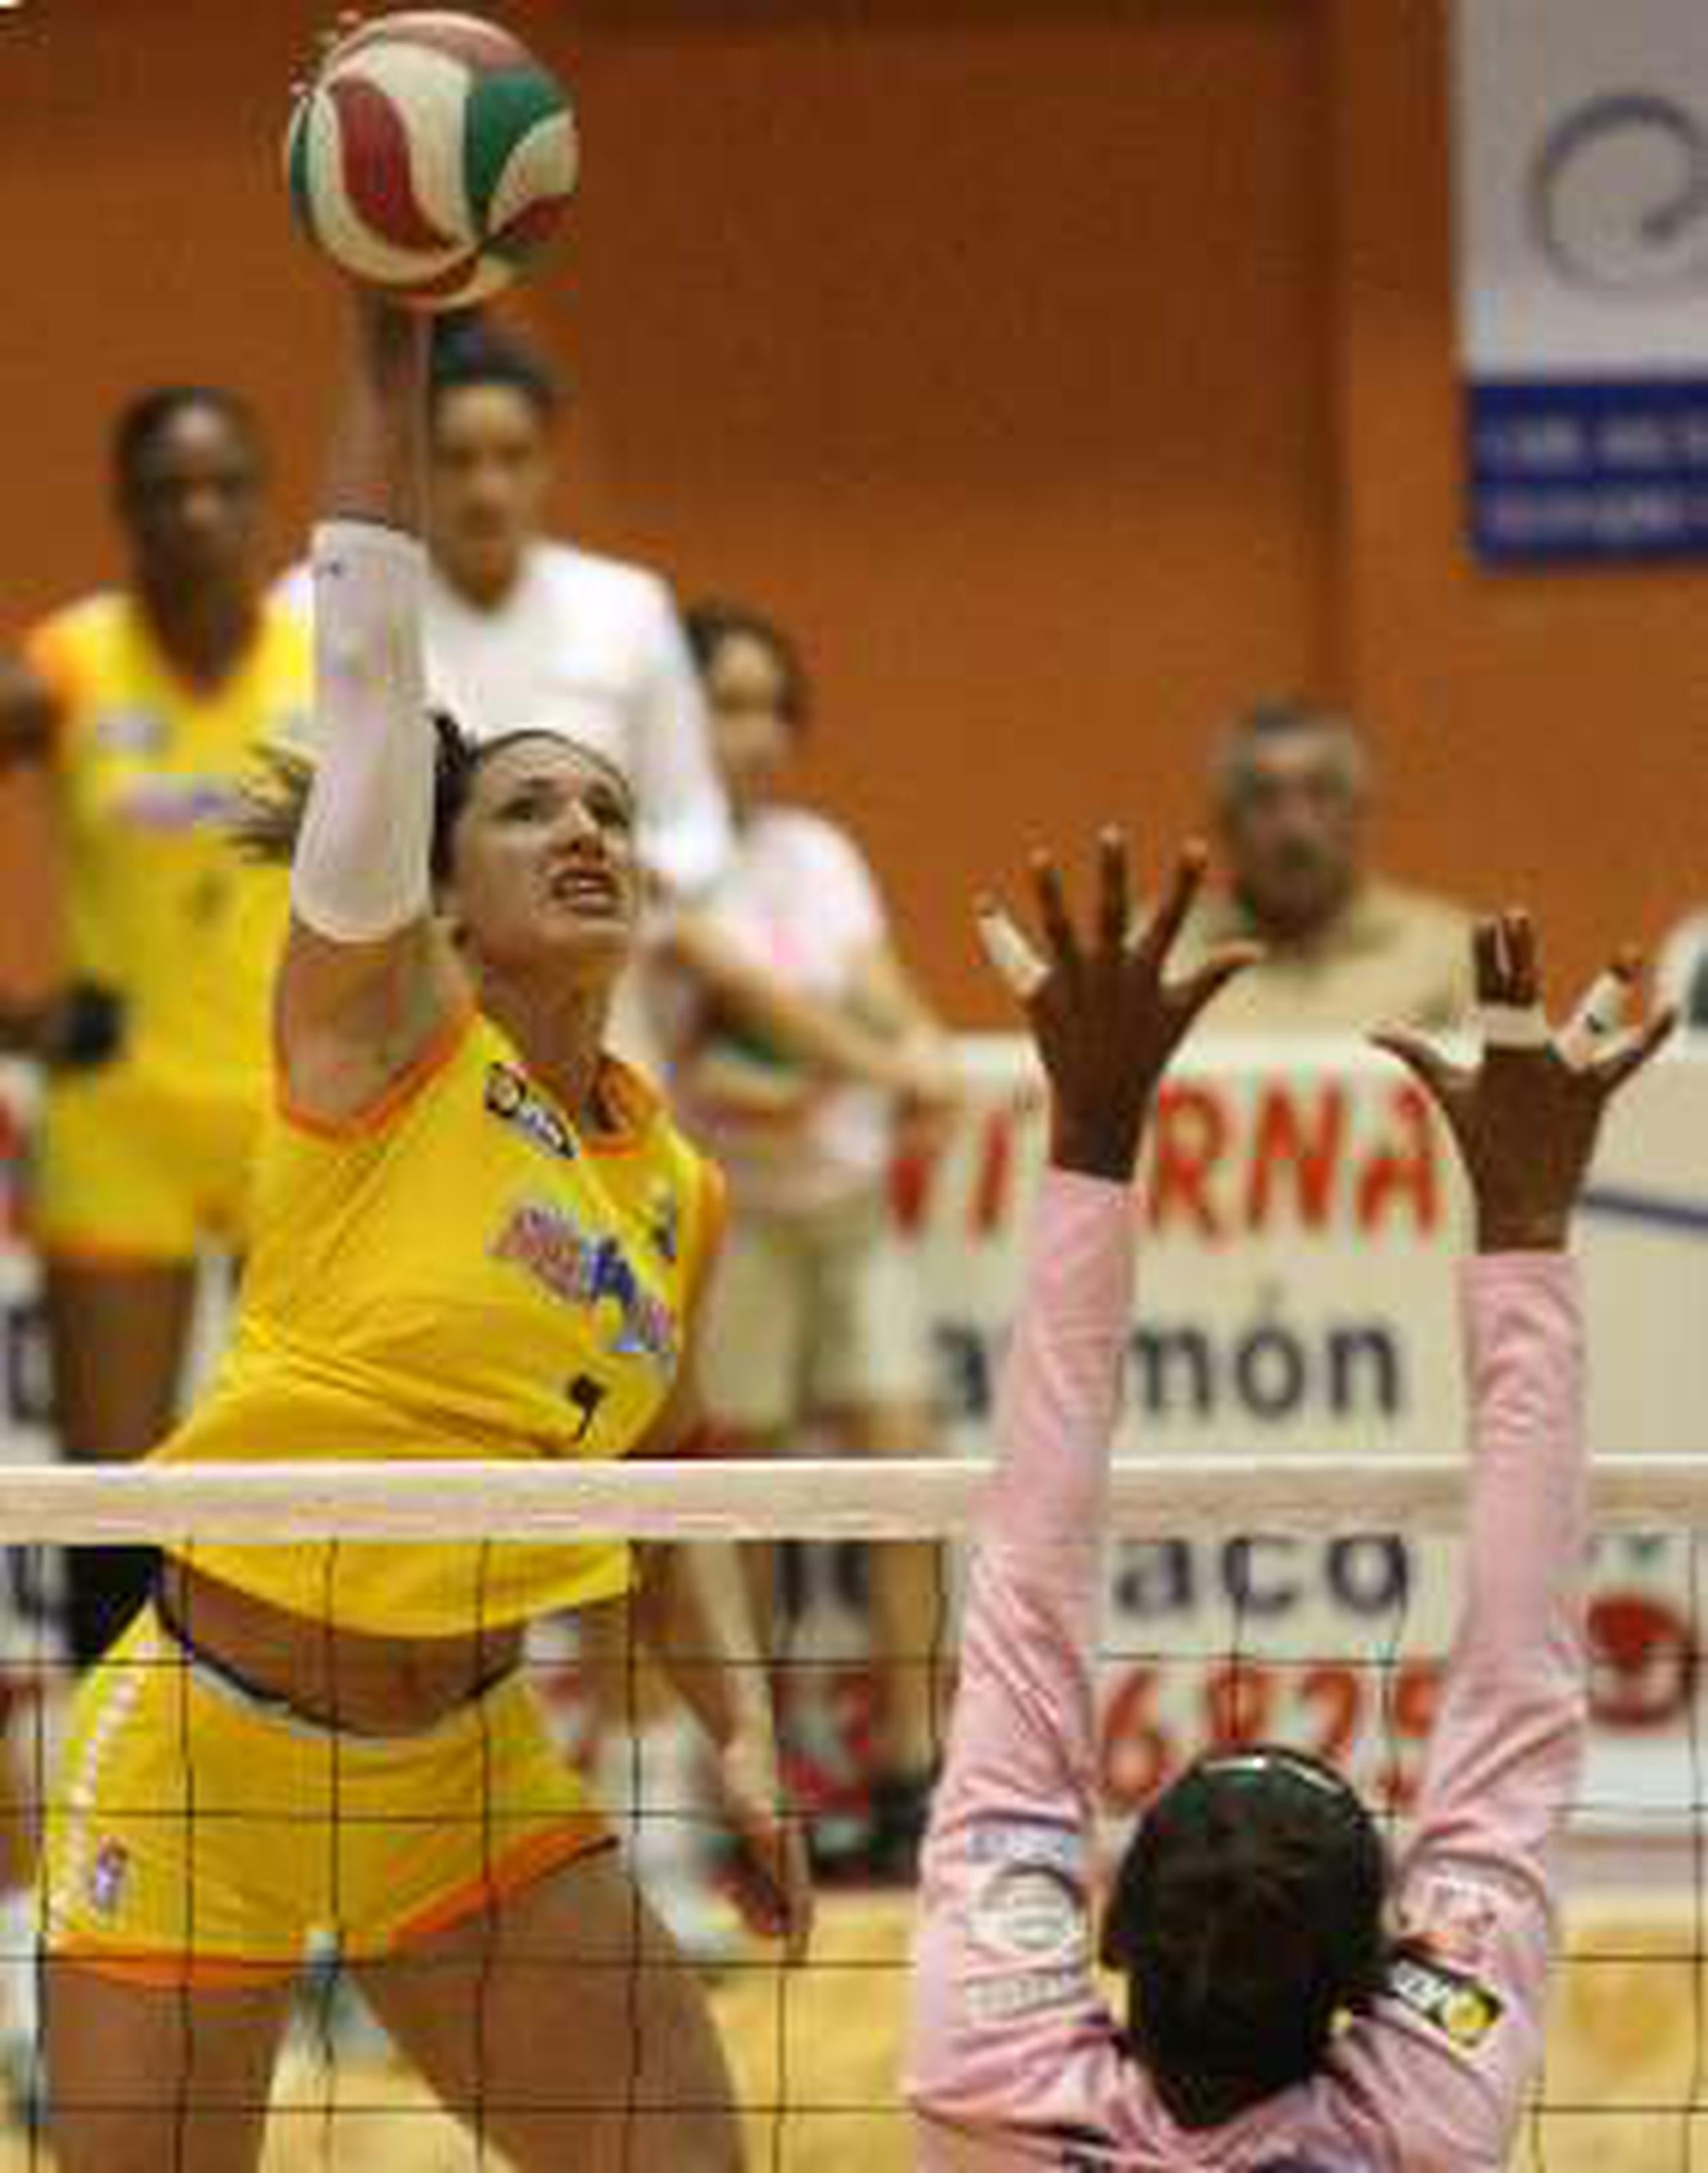  Sheila López -en la imagen rematando- ocupa la posición número 24 entre las mejores anotadoras en la LVSF.&nbsp;<font color="yellow">(Primera Hora / José L. Cruz Candelaria)</font>